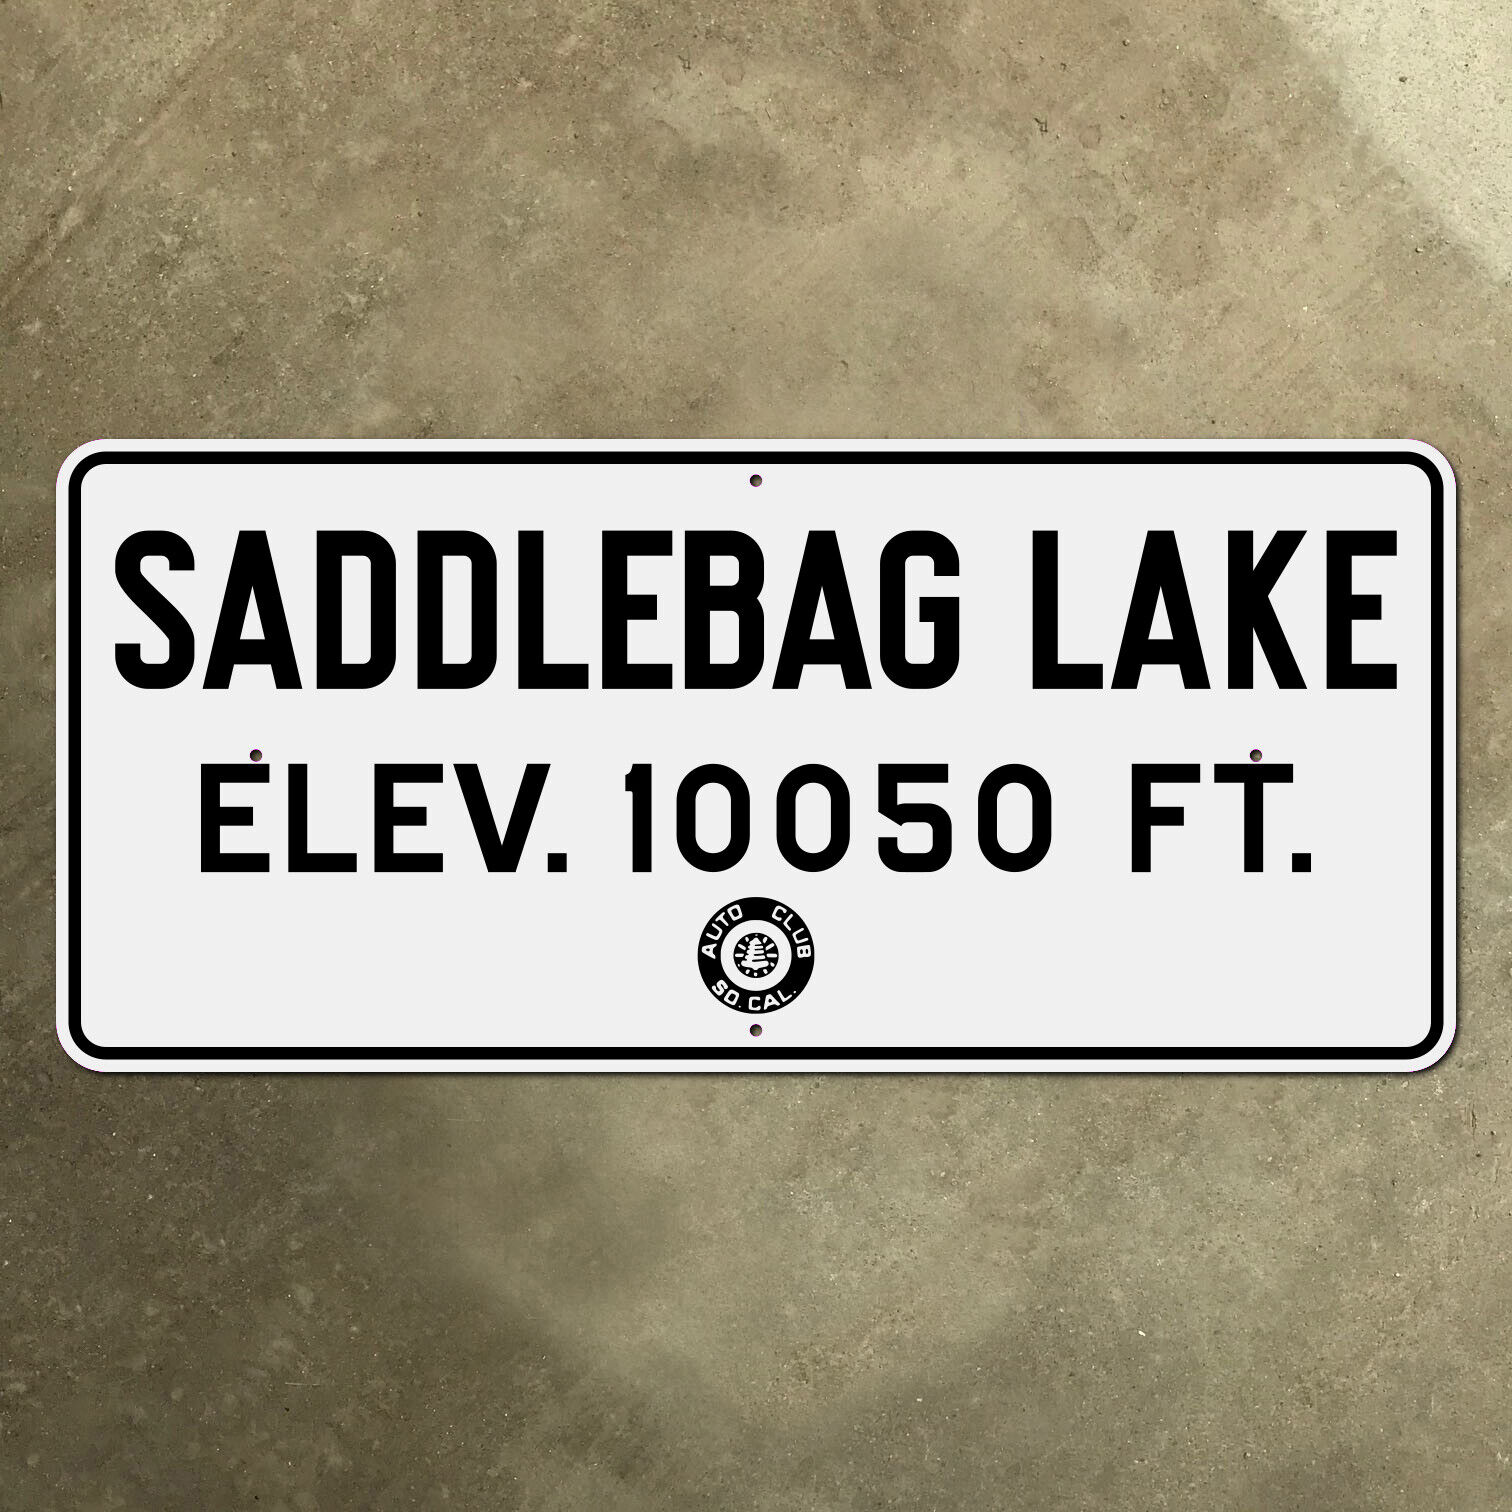 ACSC Saddlebag Lake California Yosemite highway 1936 road sign elevation 18x8